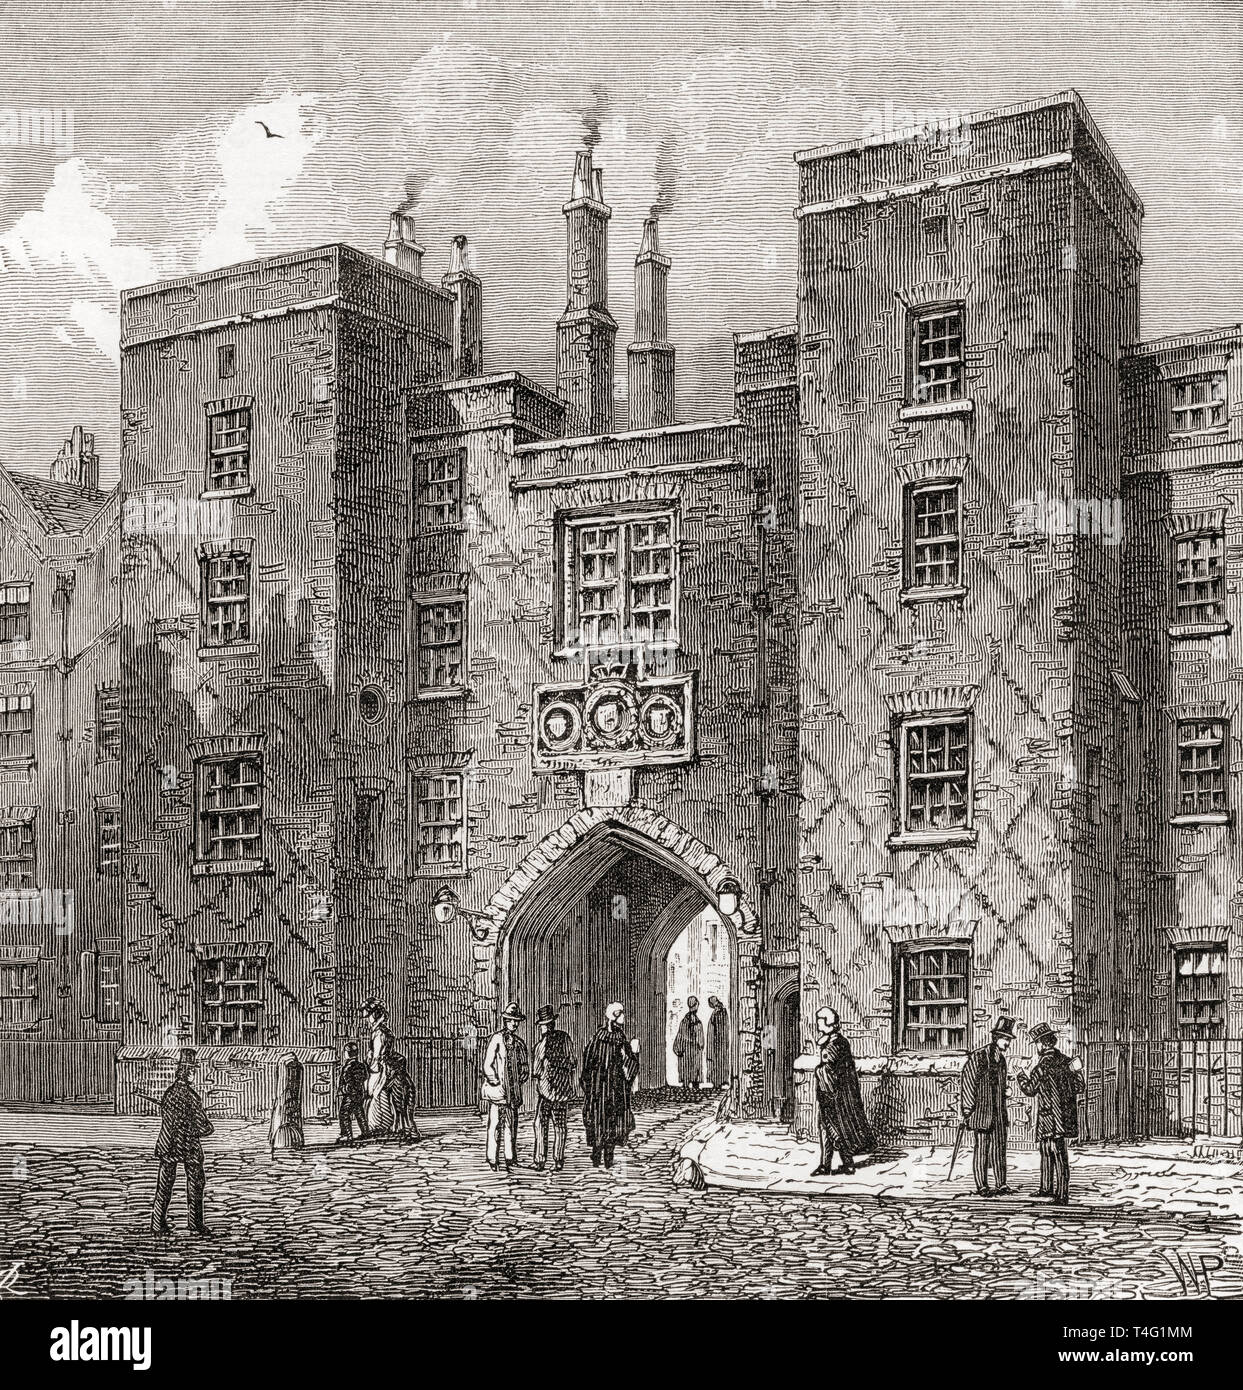 Le Chancery Lane porte de Lincoln's Inn, Londres, Angleterre, vu ici au 19e siècle. Photos de Londres, publié 1890 Banque D'Images